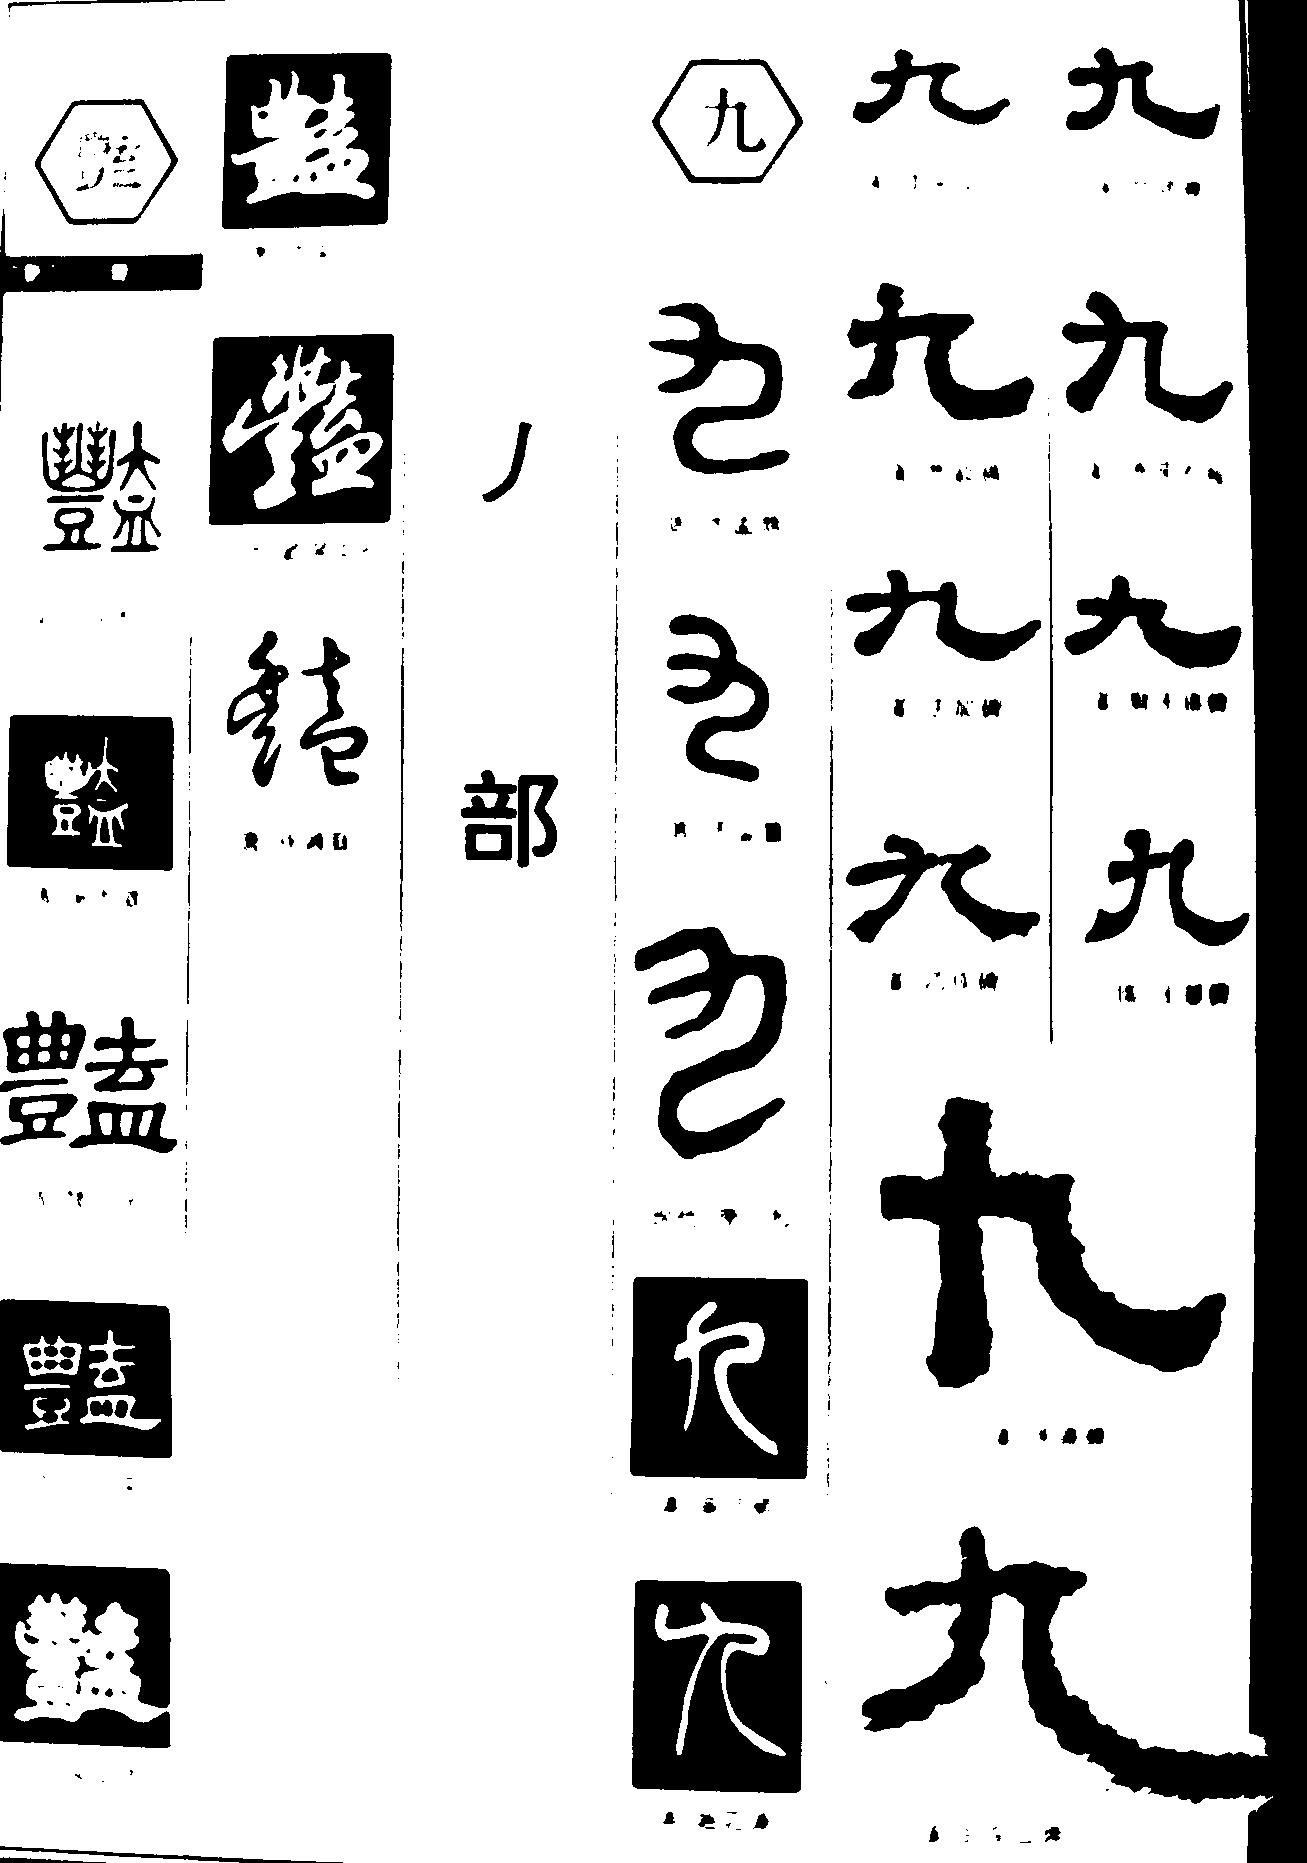 艳九 艺术字 毛笔字 书法字 繁体 标志设计